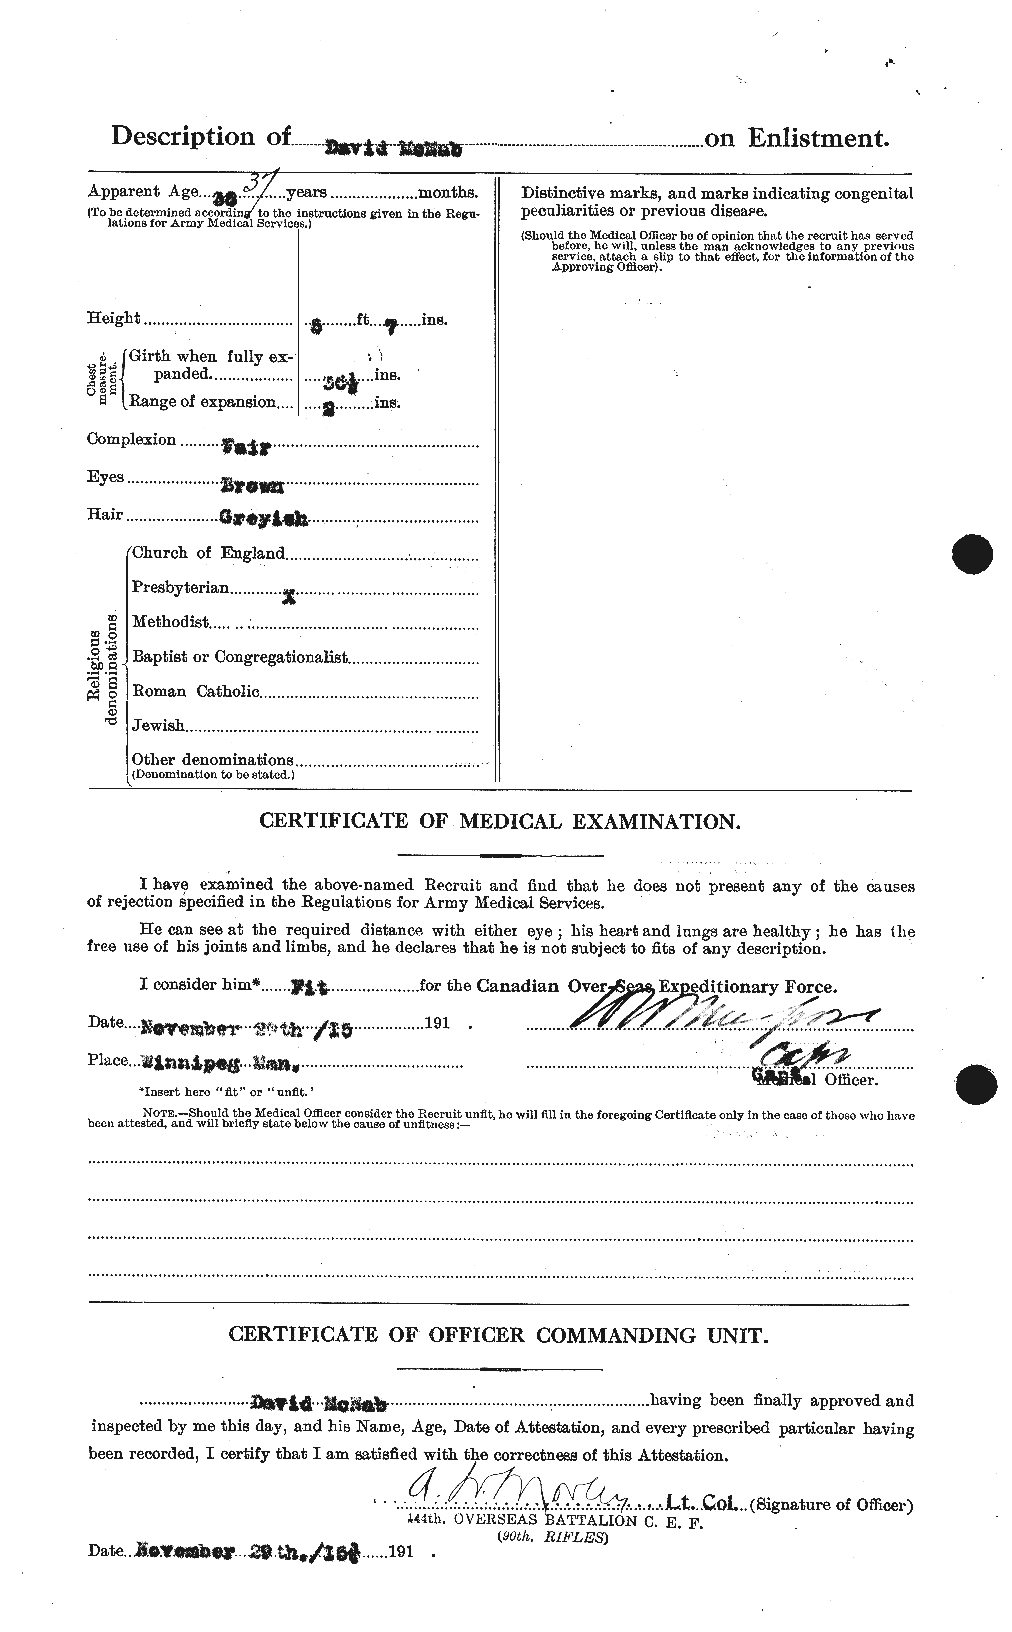 Dossiers du Personnel de la Première Guerre mondiale - CEC 539531b